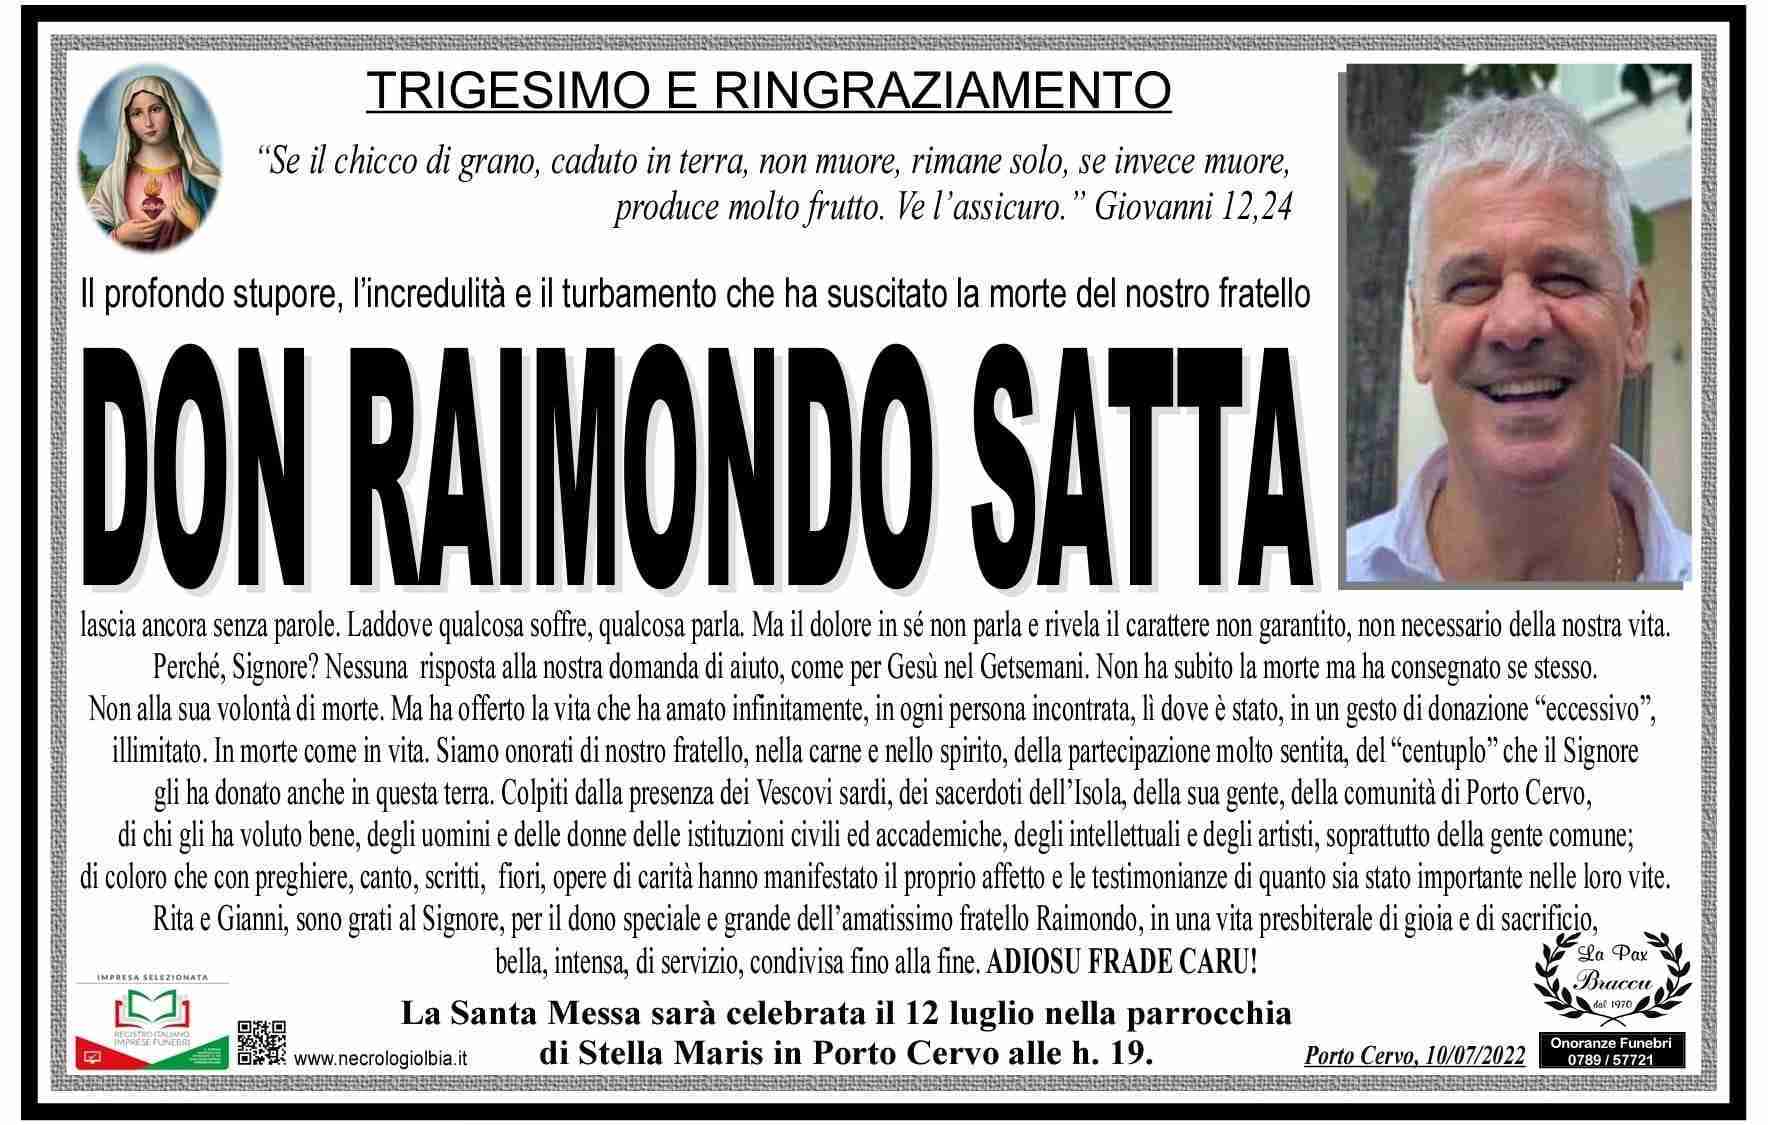 Don Raimondo Satta